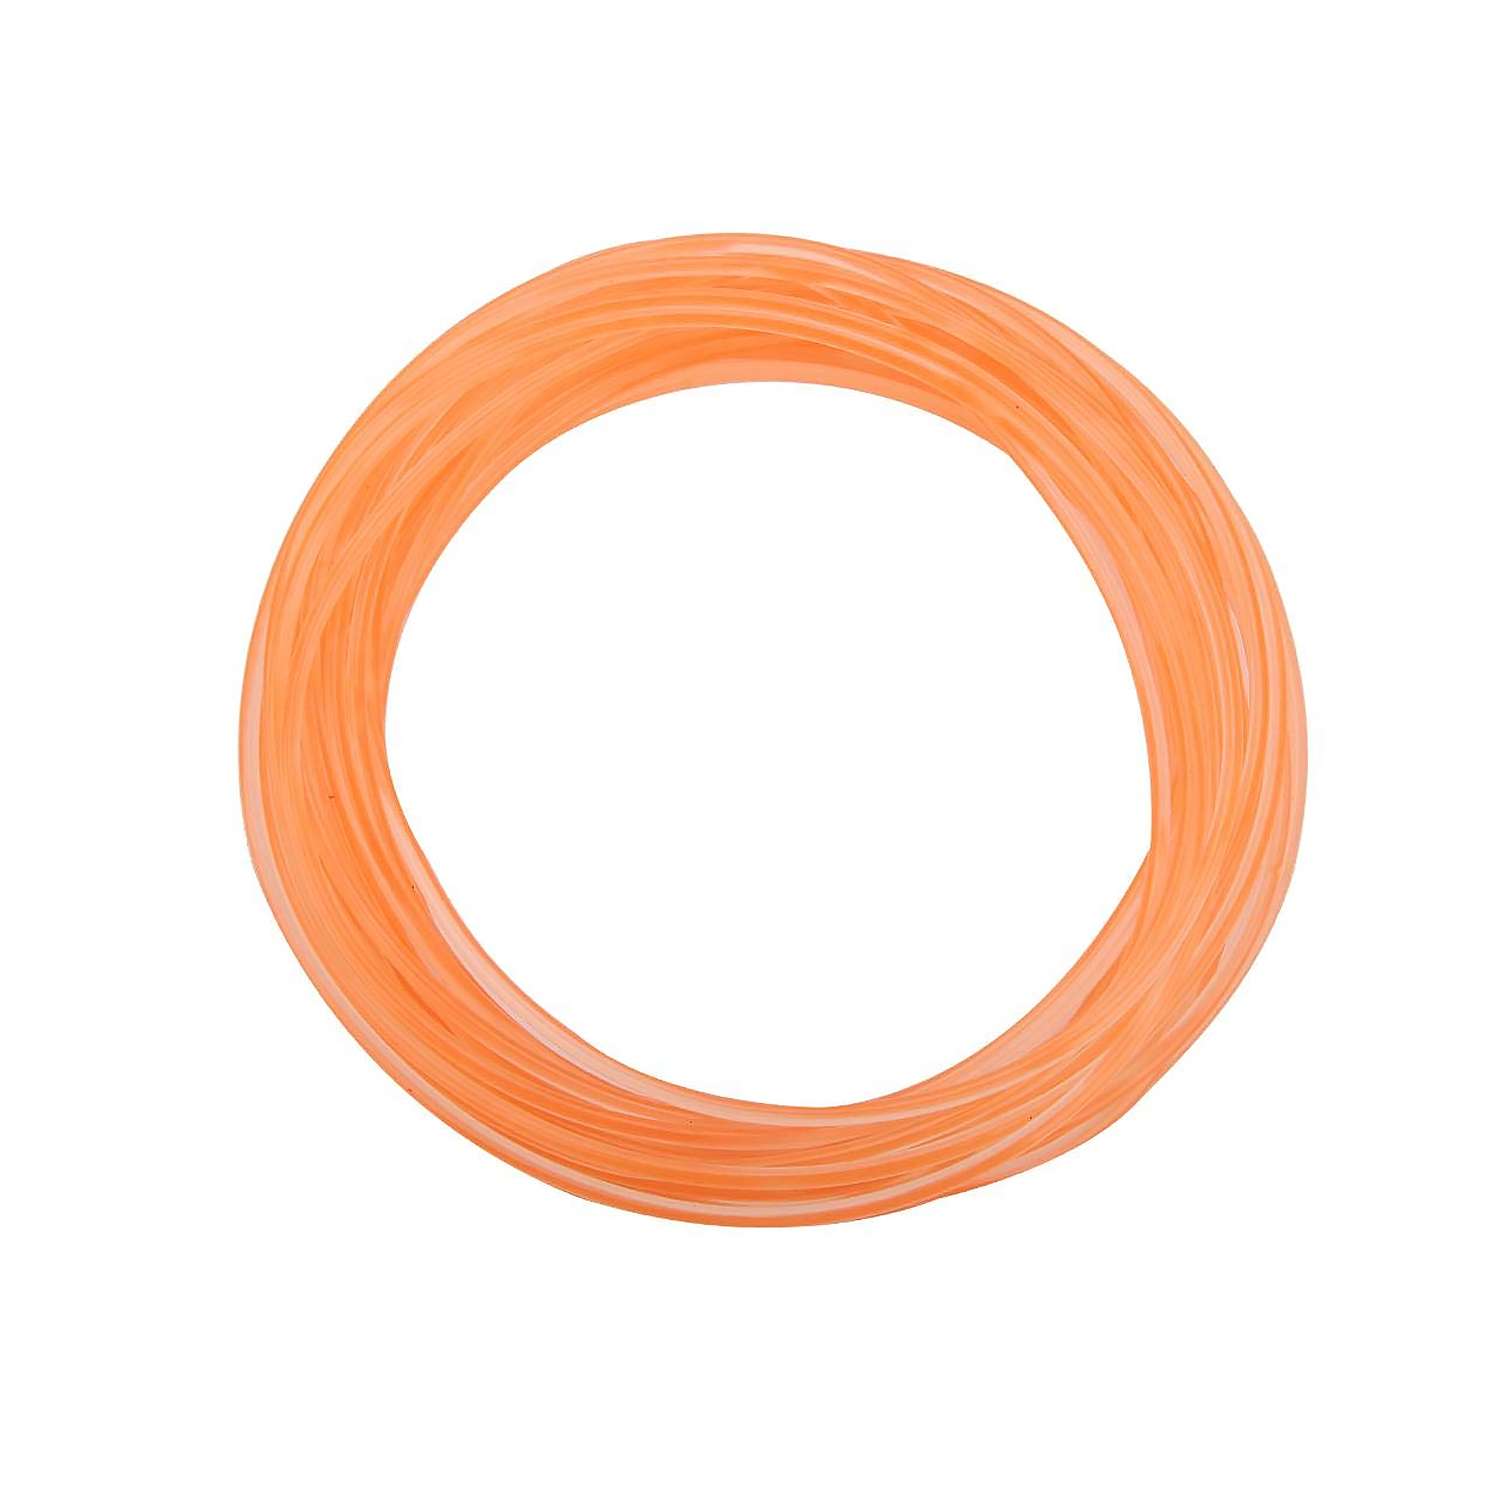 Пластик для 3D ручек Seichi 5 м оранжевый - фото 1